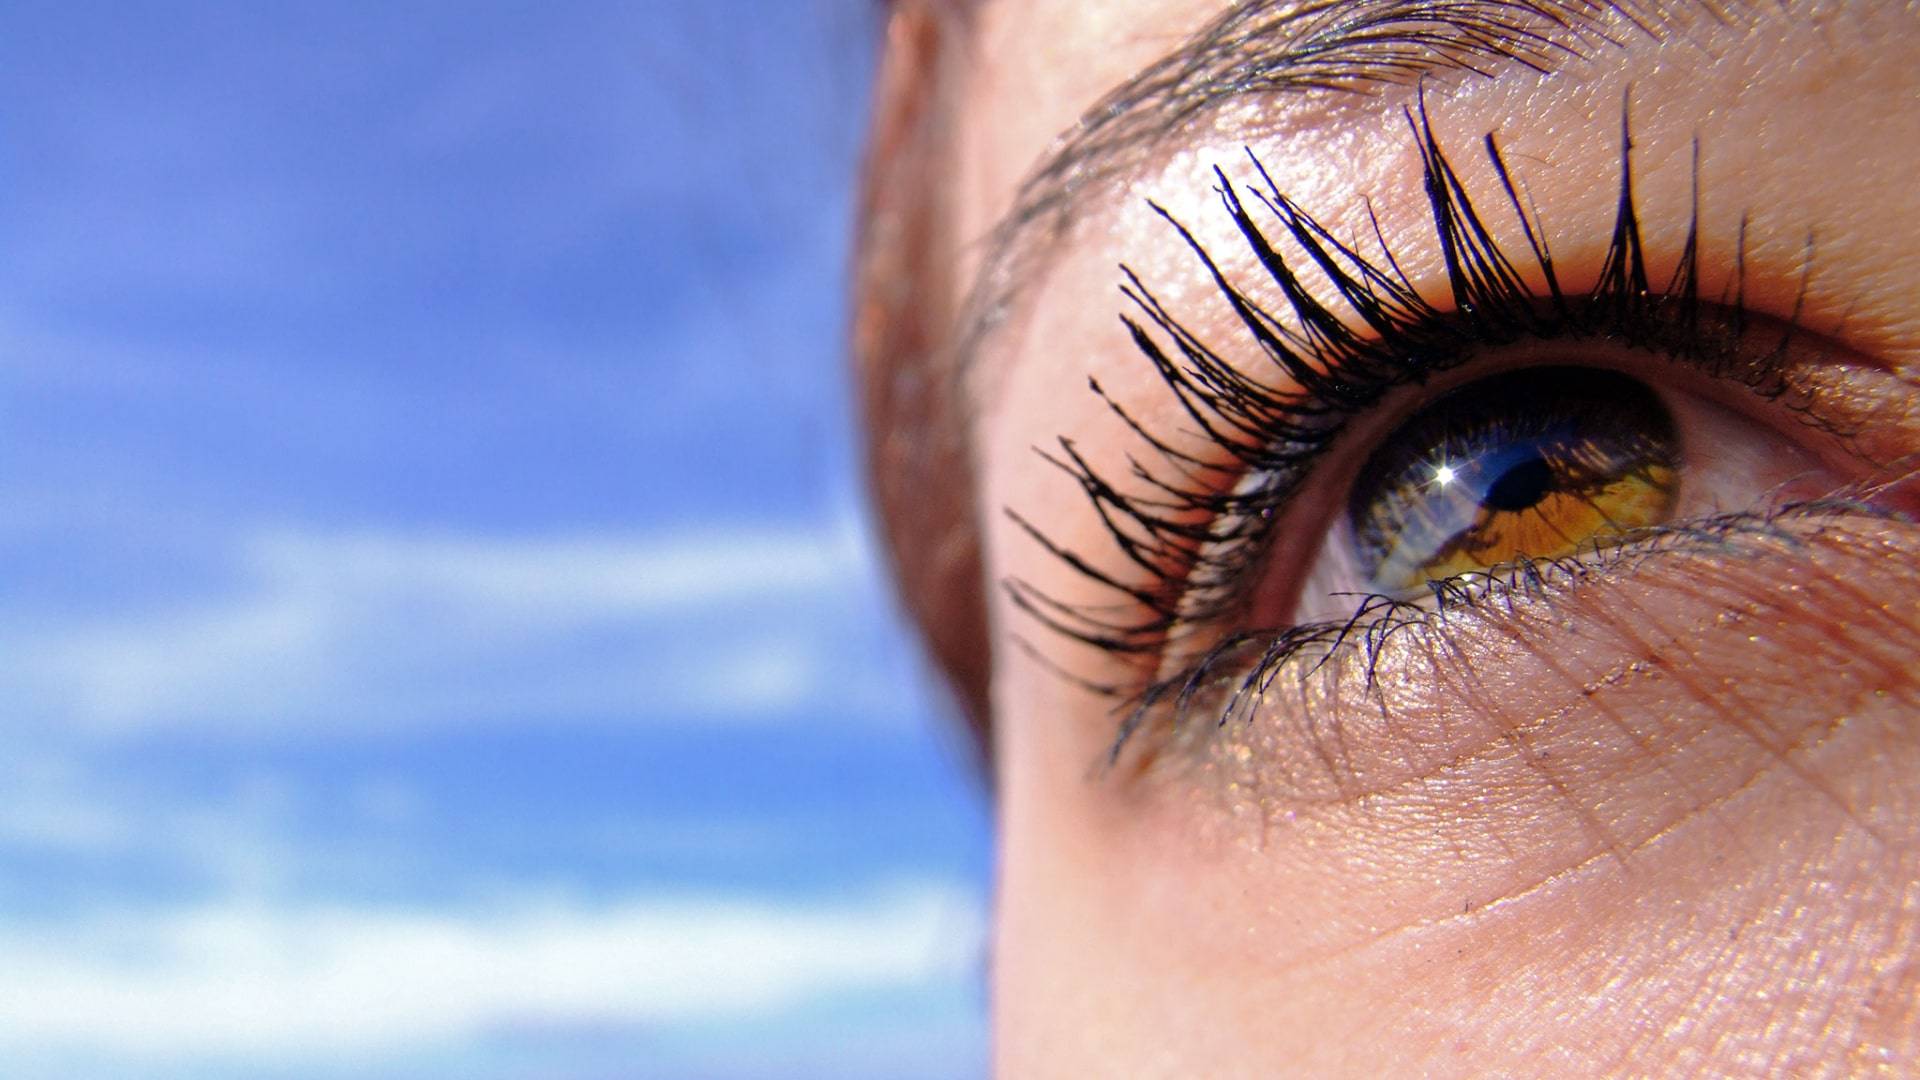 Cet été, protégez vos yeux des rayons UV cet été pour prévenir des problèmes de santé oculaire, allant de l'irritation à la cataracte.